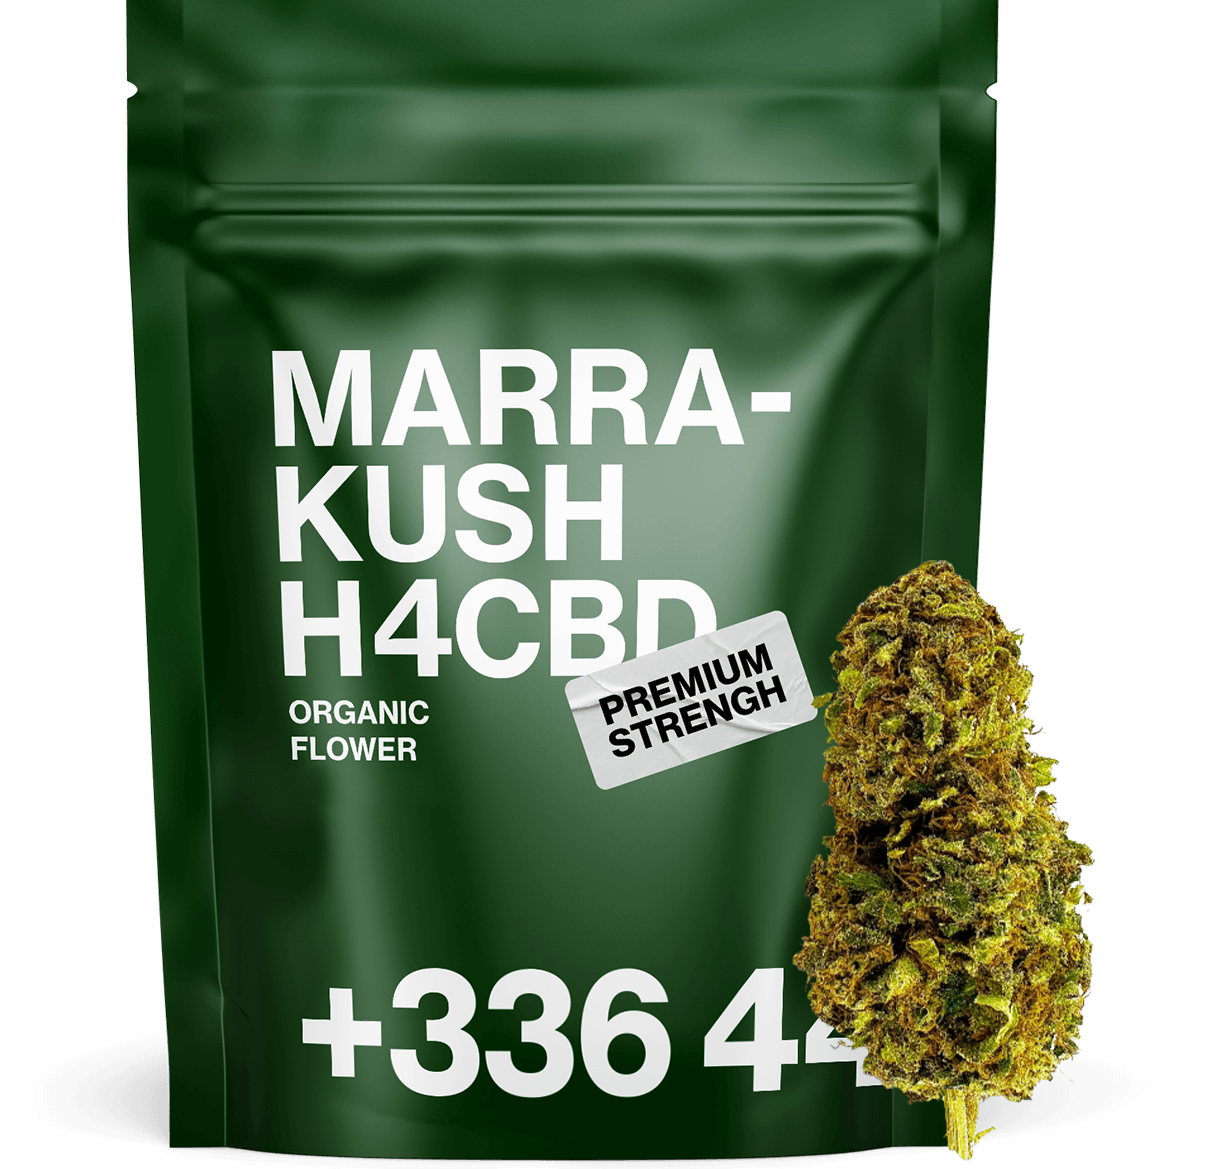 Marra-Kush H4CBD 🥦